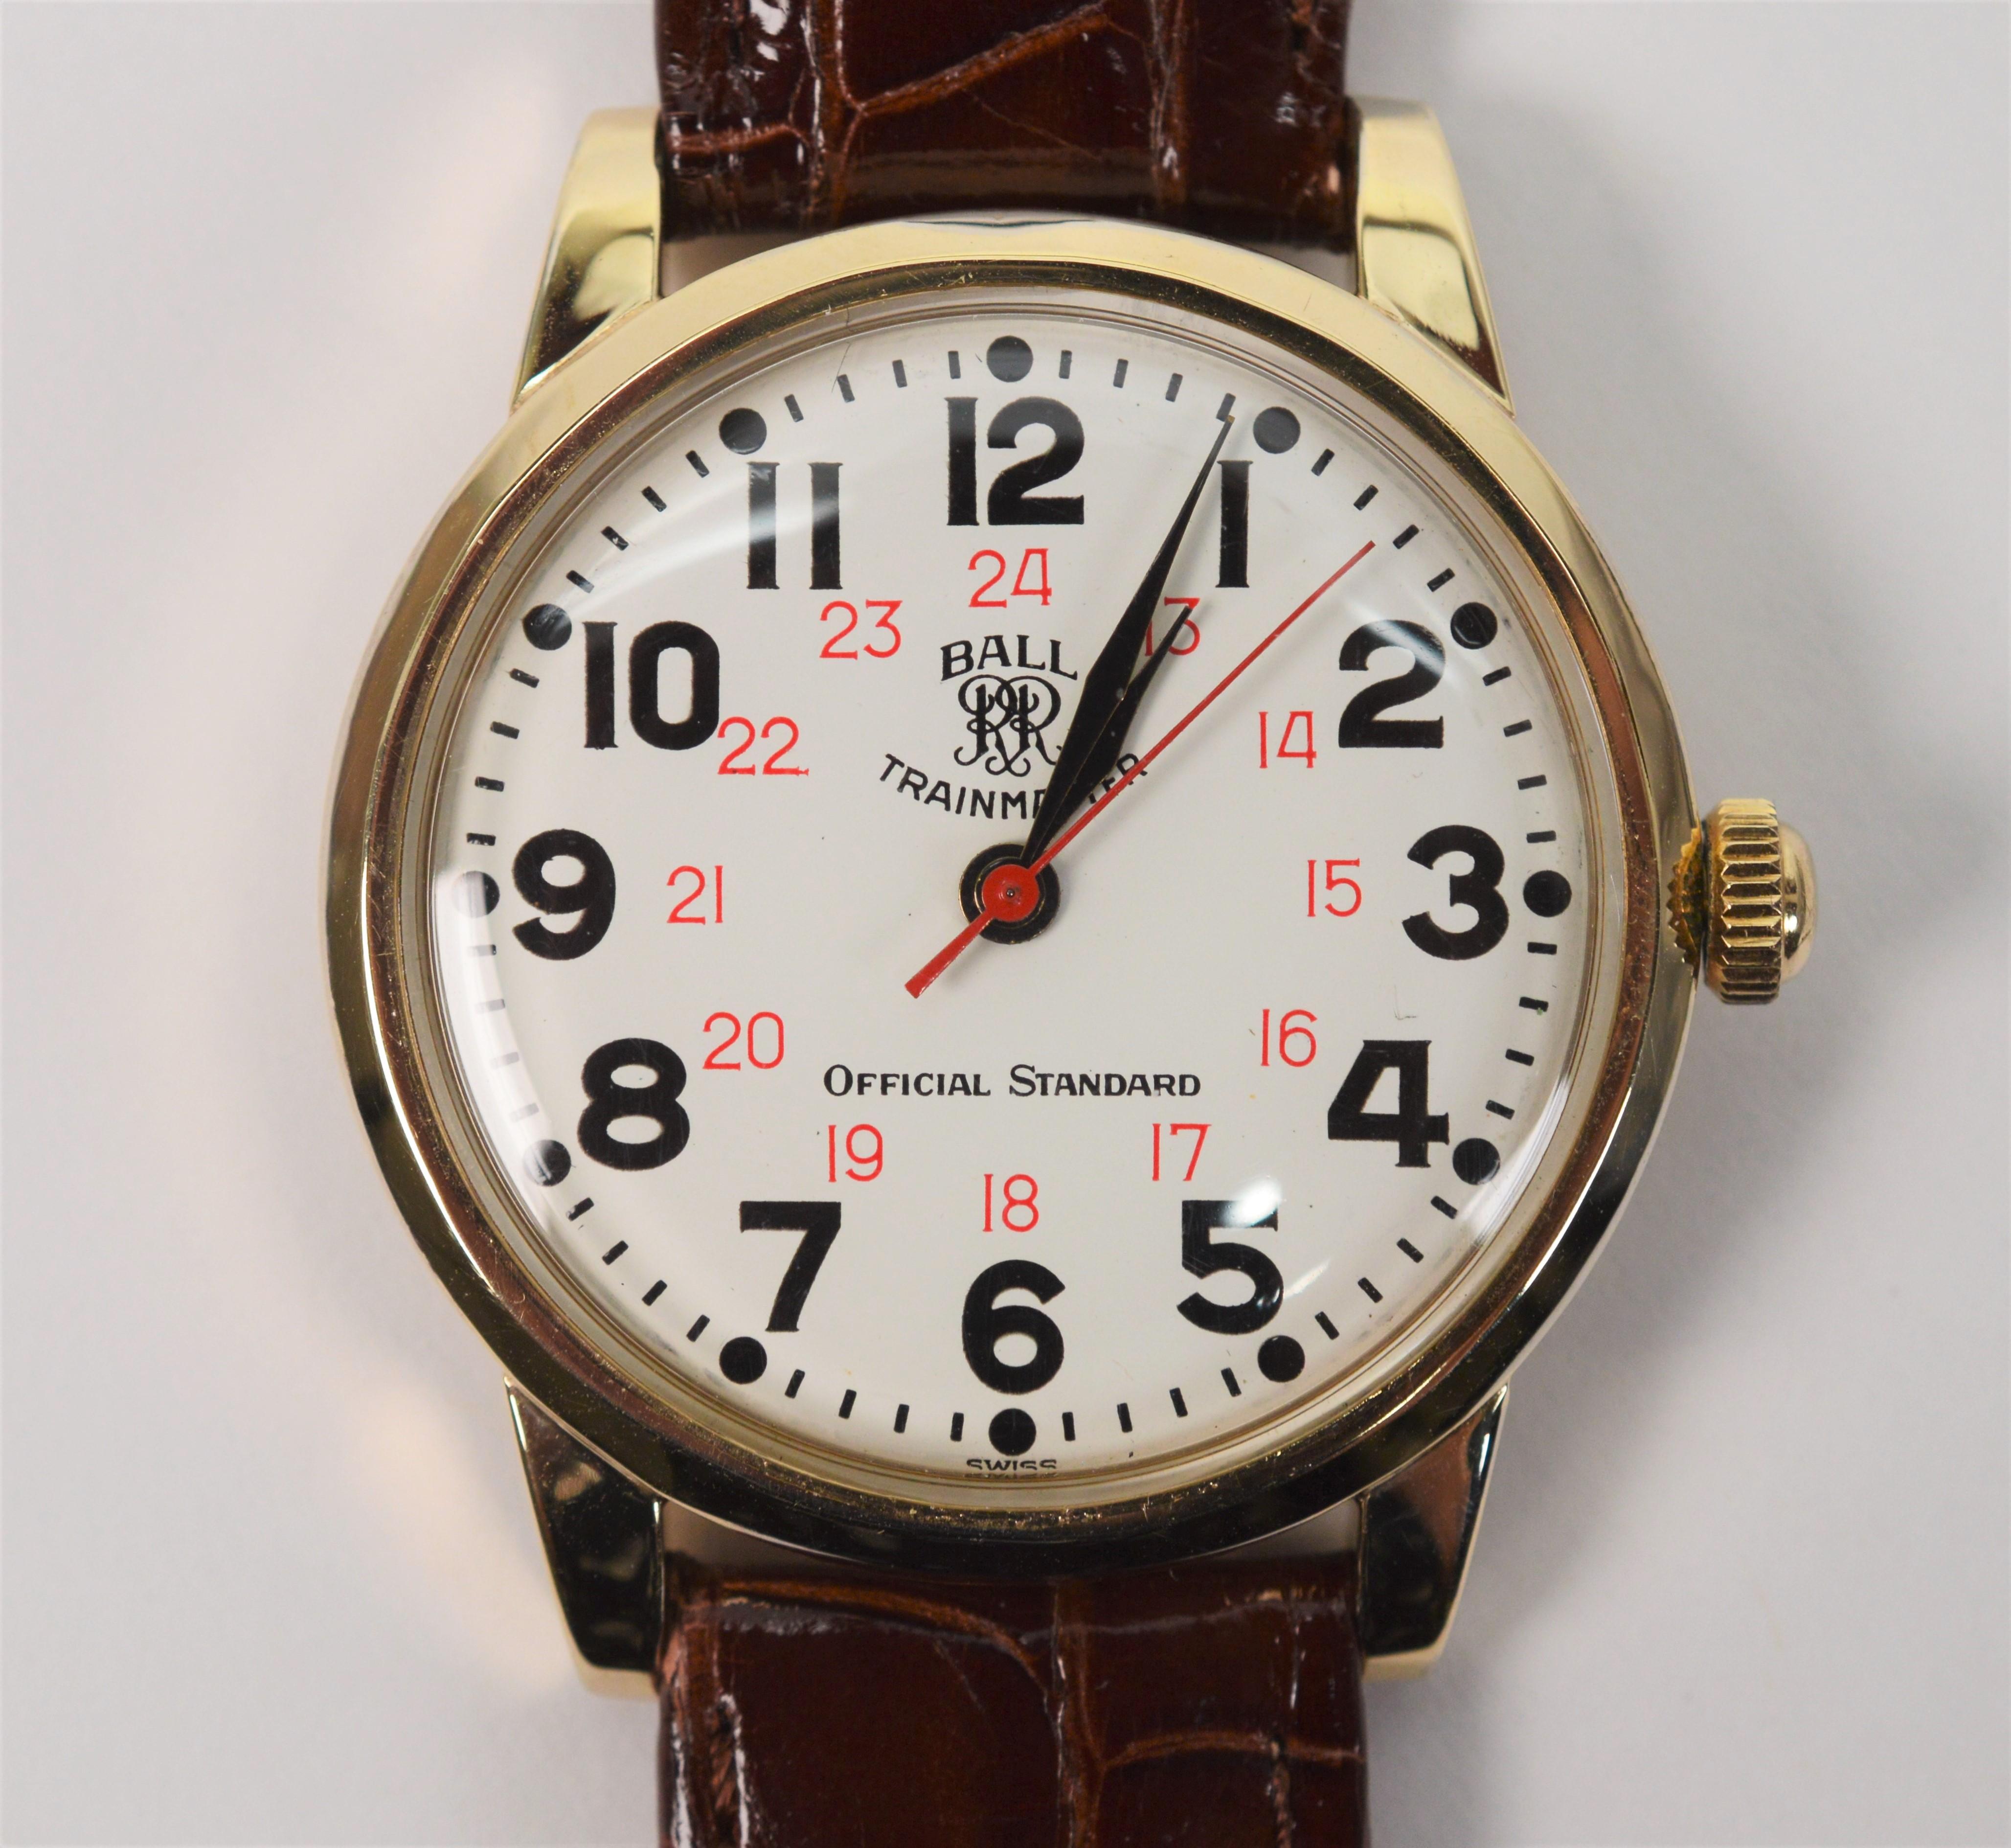 Ball Watch Co. Trainmaster Official Standard Men's Wrist Watch 3